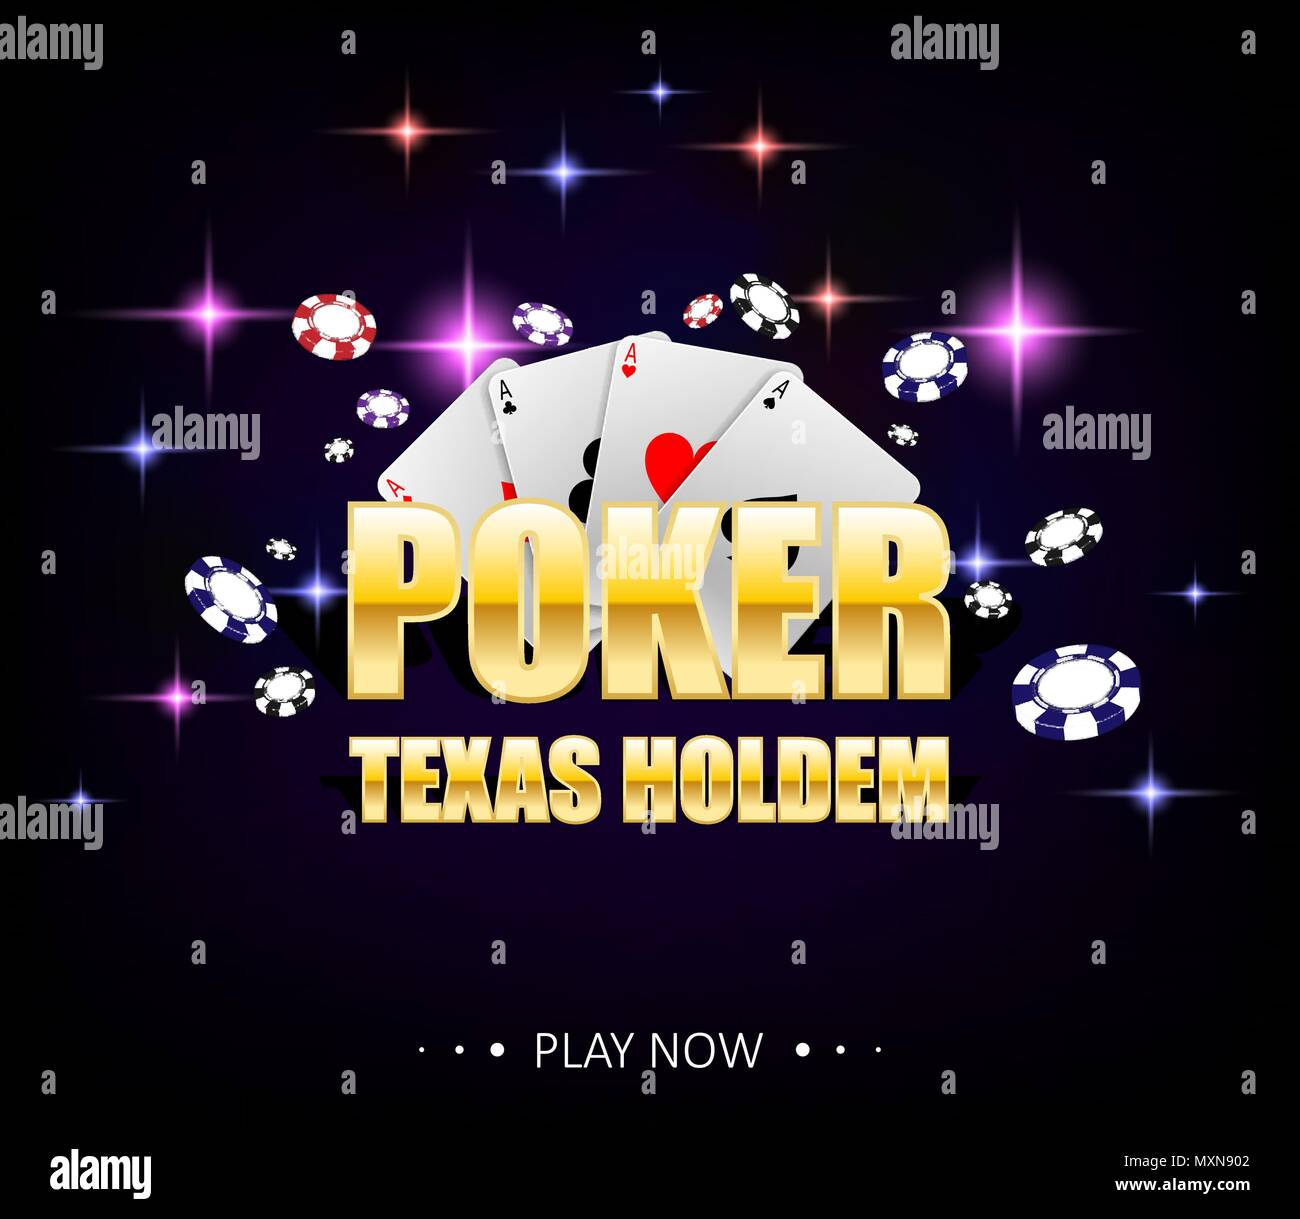 Internet casino Banner mit leuchtenden Lampen für Online Casino, Poker, Kartenspiele, Texas holdem. Poker Poster mit Chips und Karten spielen. Vector Illustration Stock Vektor